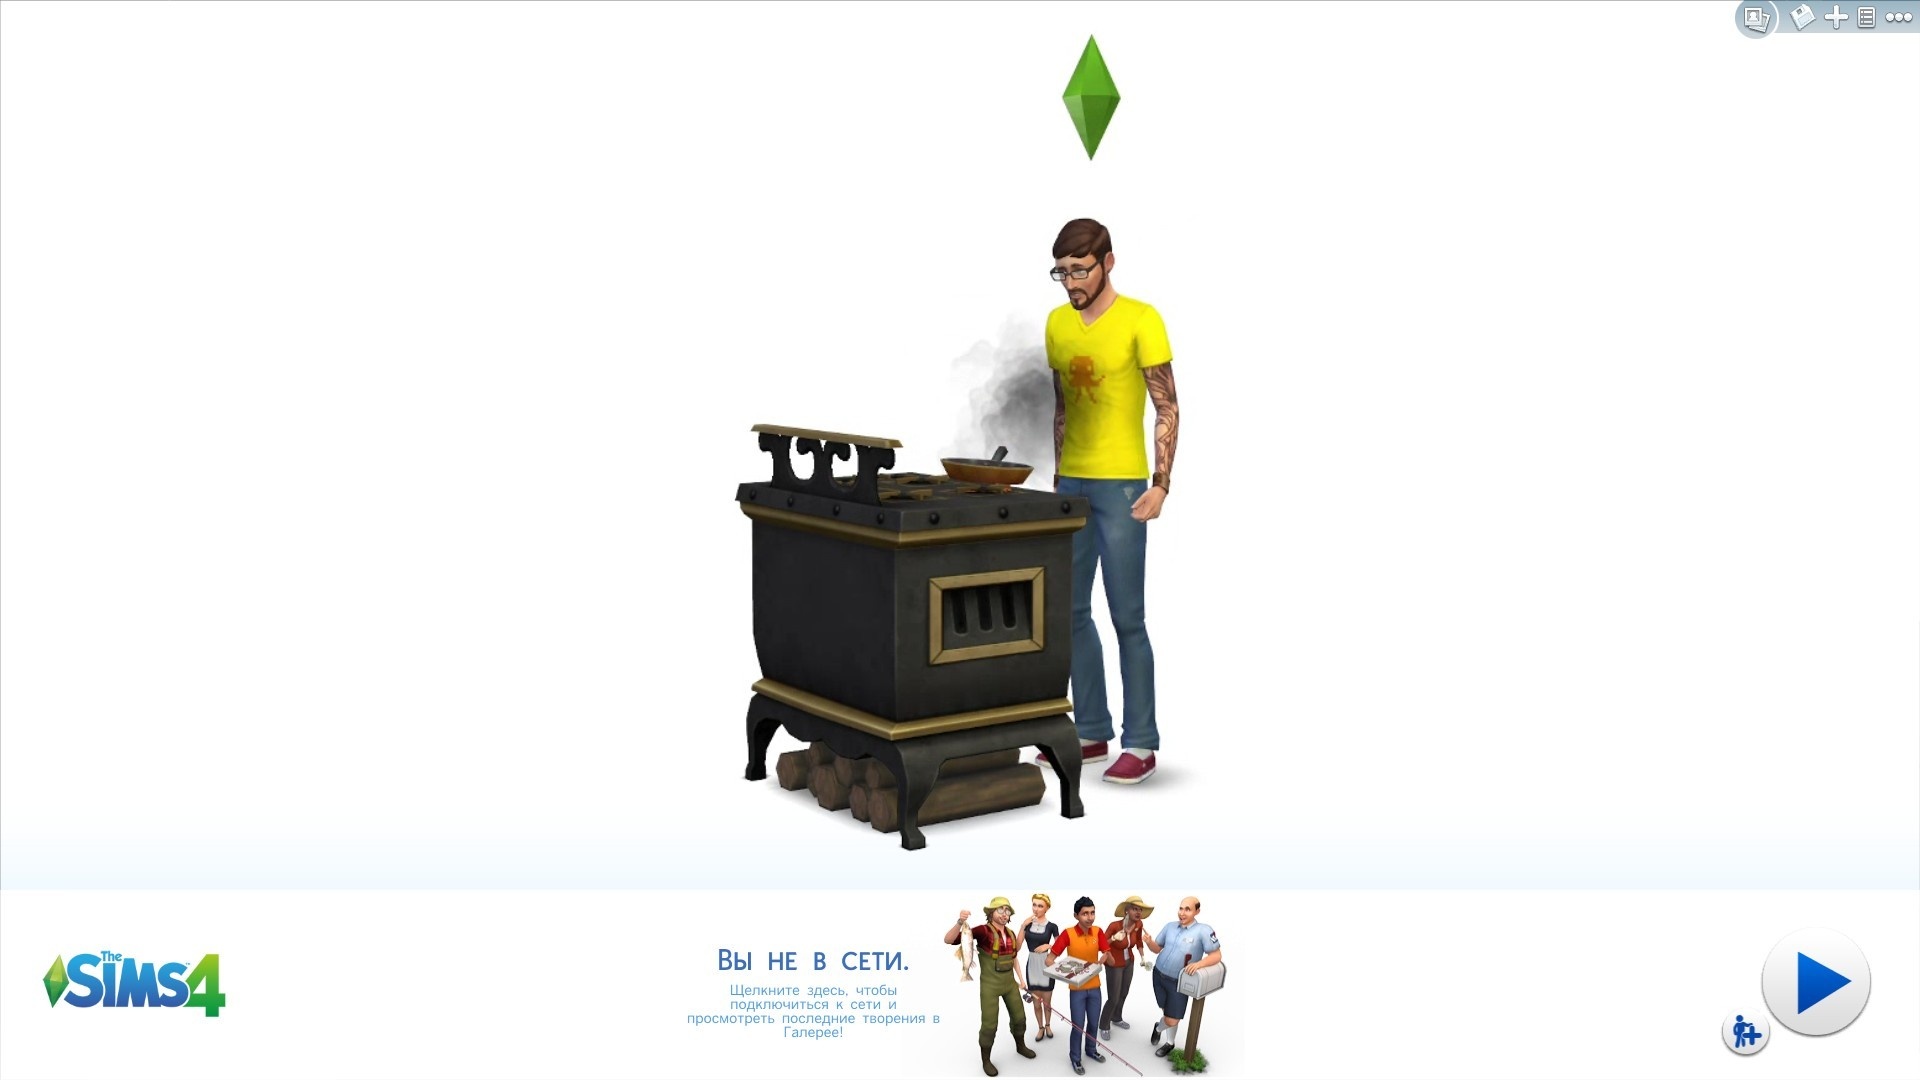 Технические проблемы Sims 4